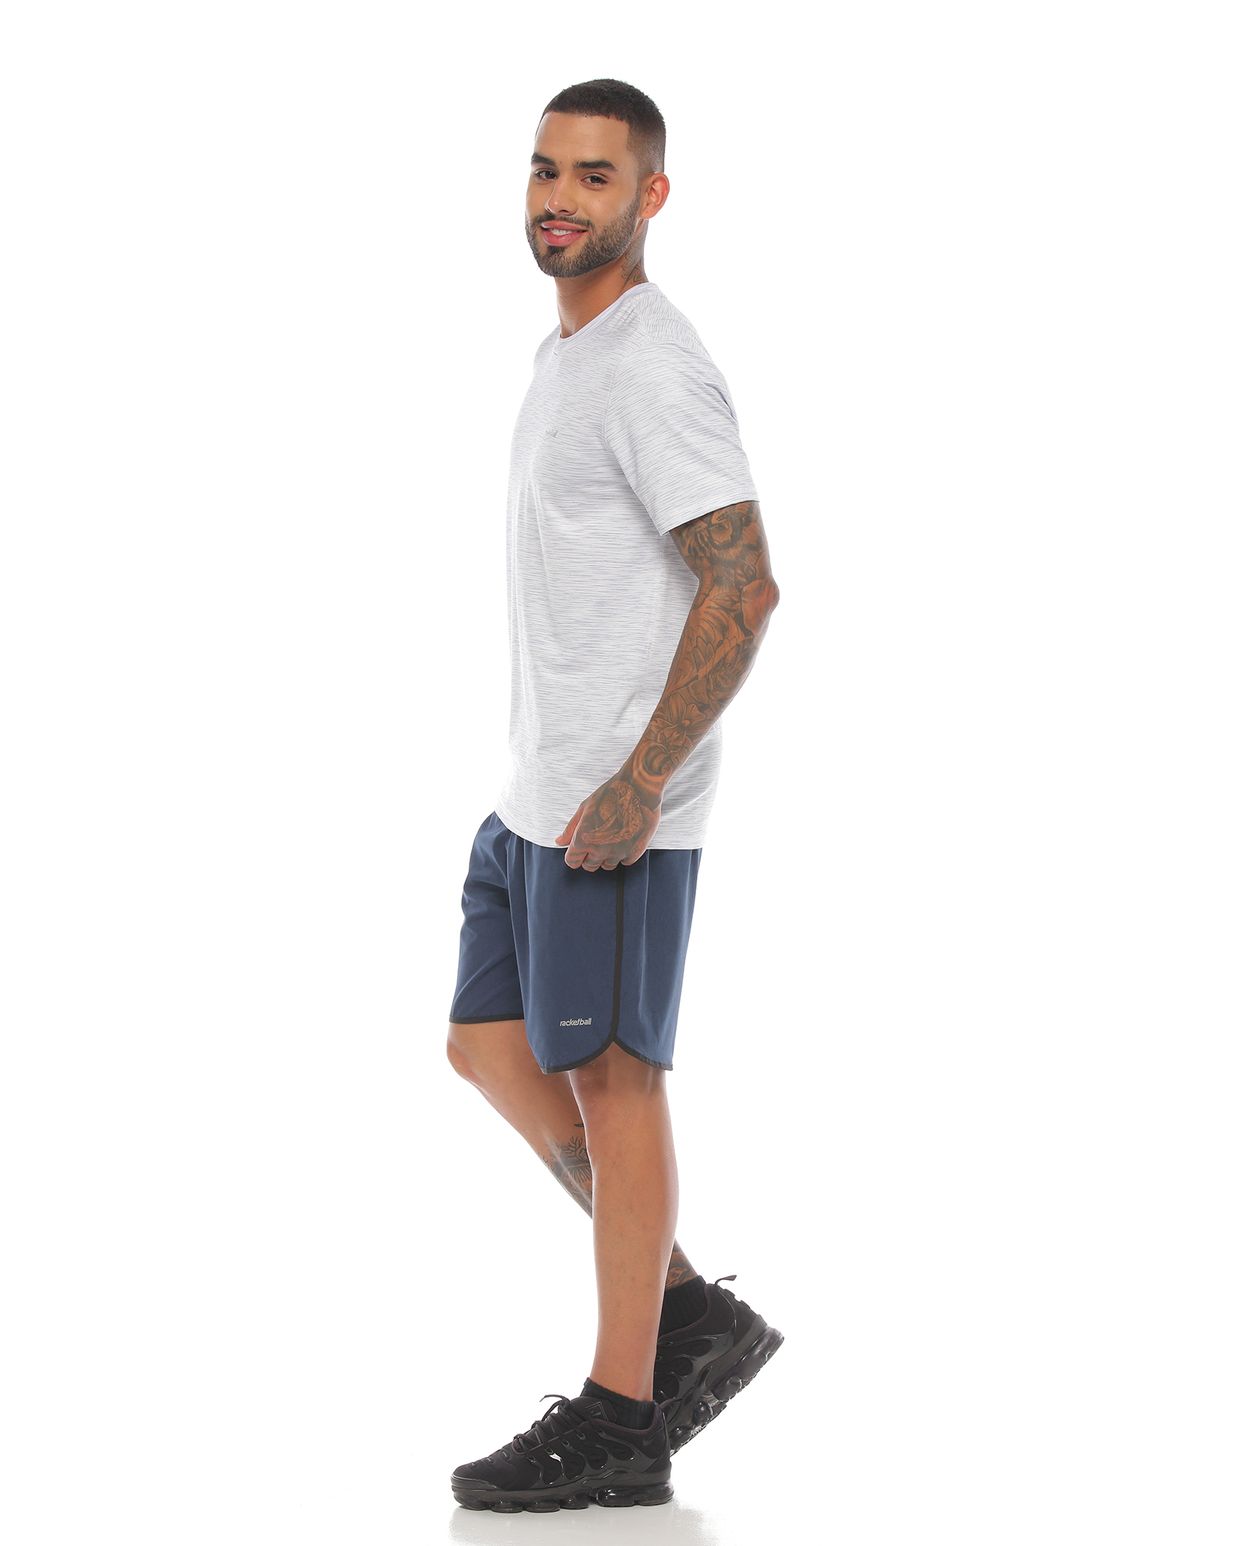 modelo con pantaloneta deportiva color petroleo negro y camiseta manga corta deportiva color blanca para hombre cuerpo completo parte lateral izquierda